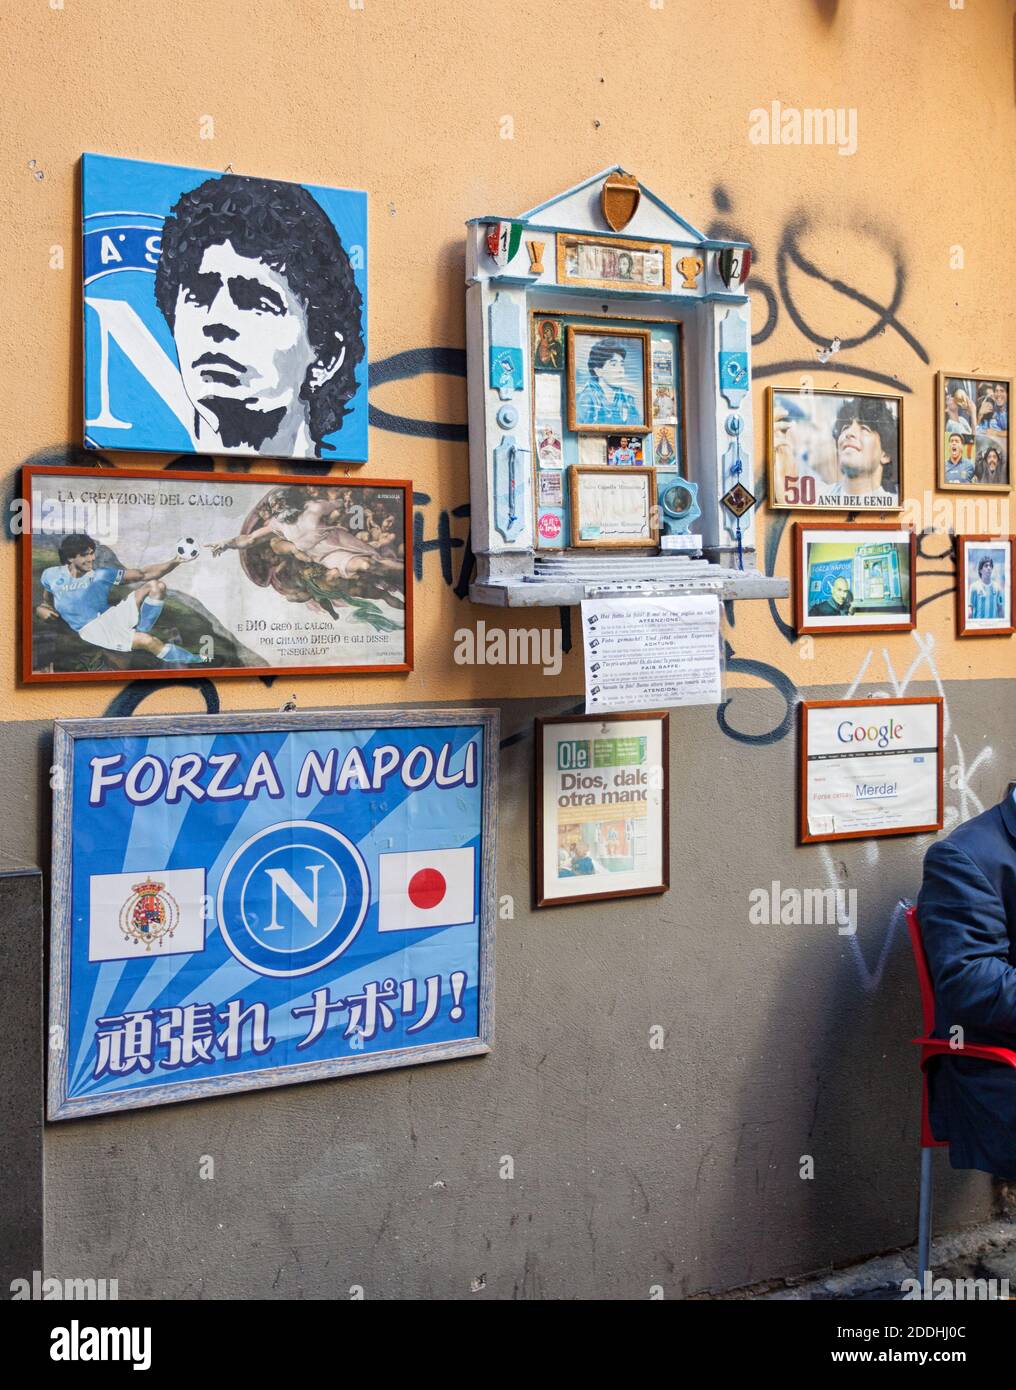 Naples, Italie - 10 octobre 2013: Autel de Maradona devant le bar Nilo, il a apporté le haut du football européen de Naples gagnant deux titres de ligue Banque D'Images